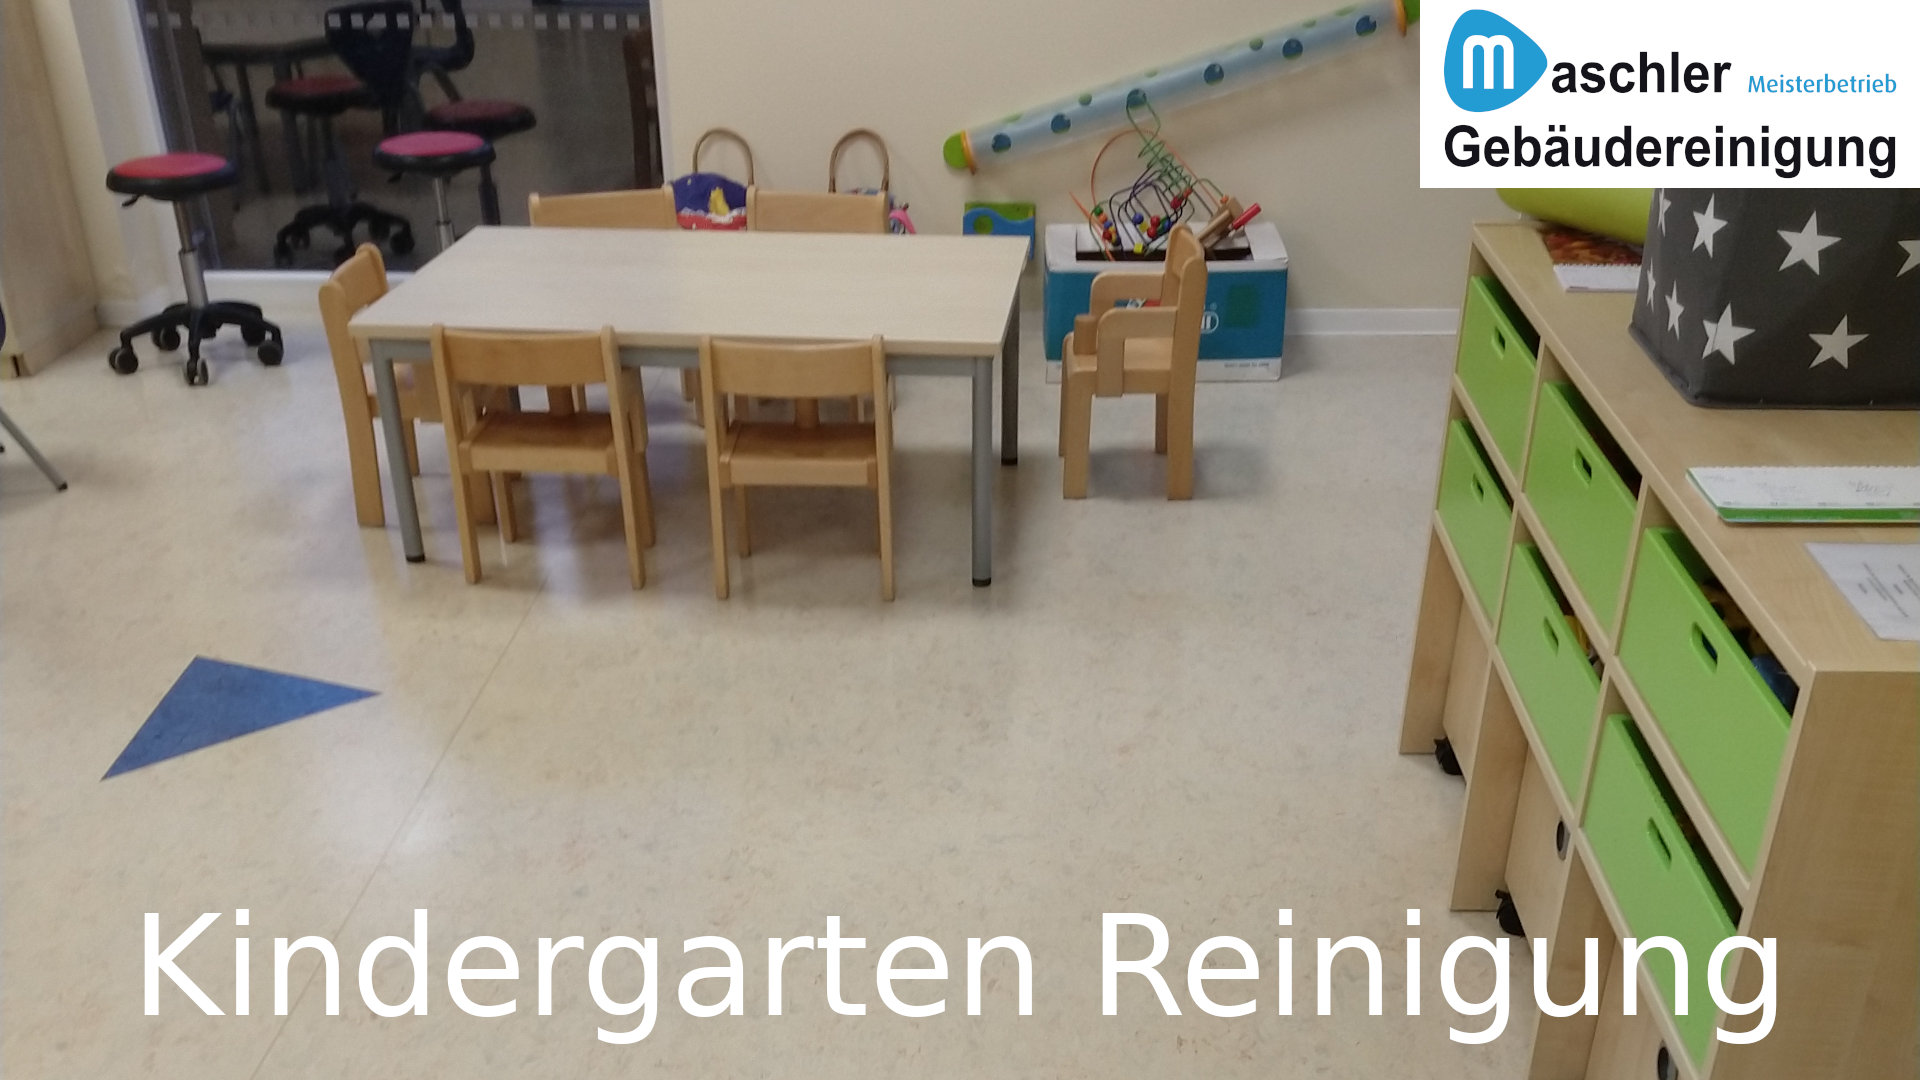 Kindergarten Reinigung - Gebäudereinigung Maschler Schwerin